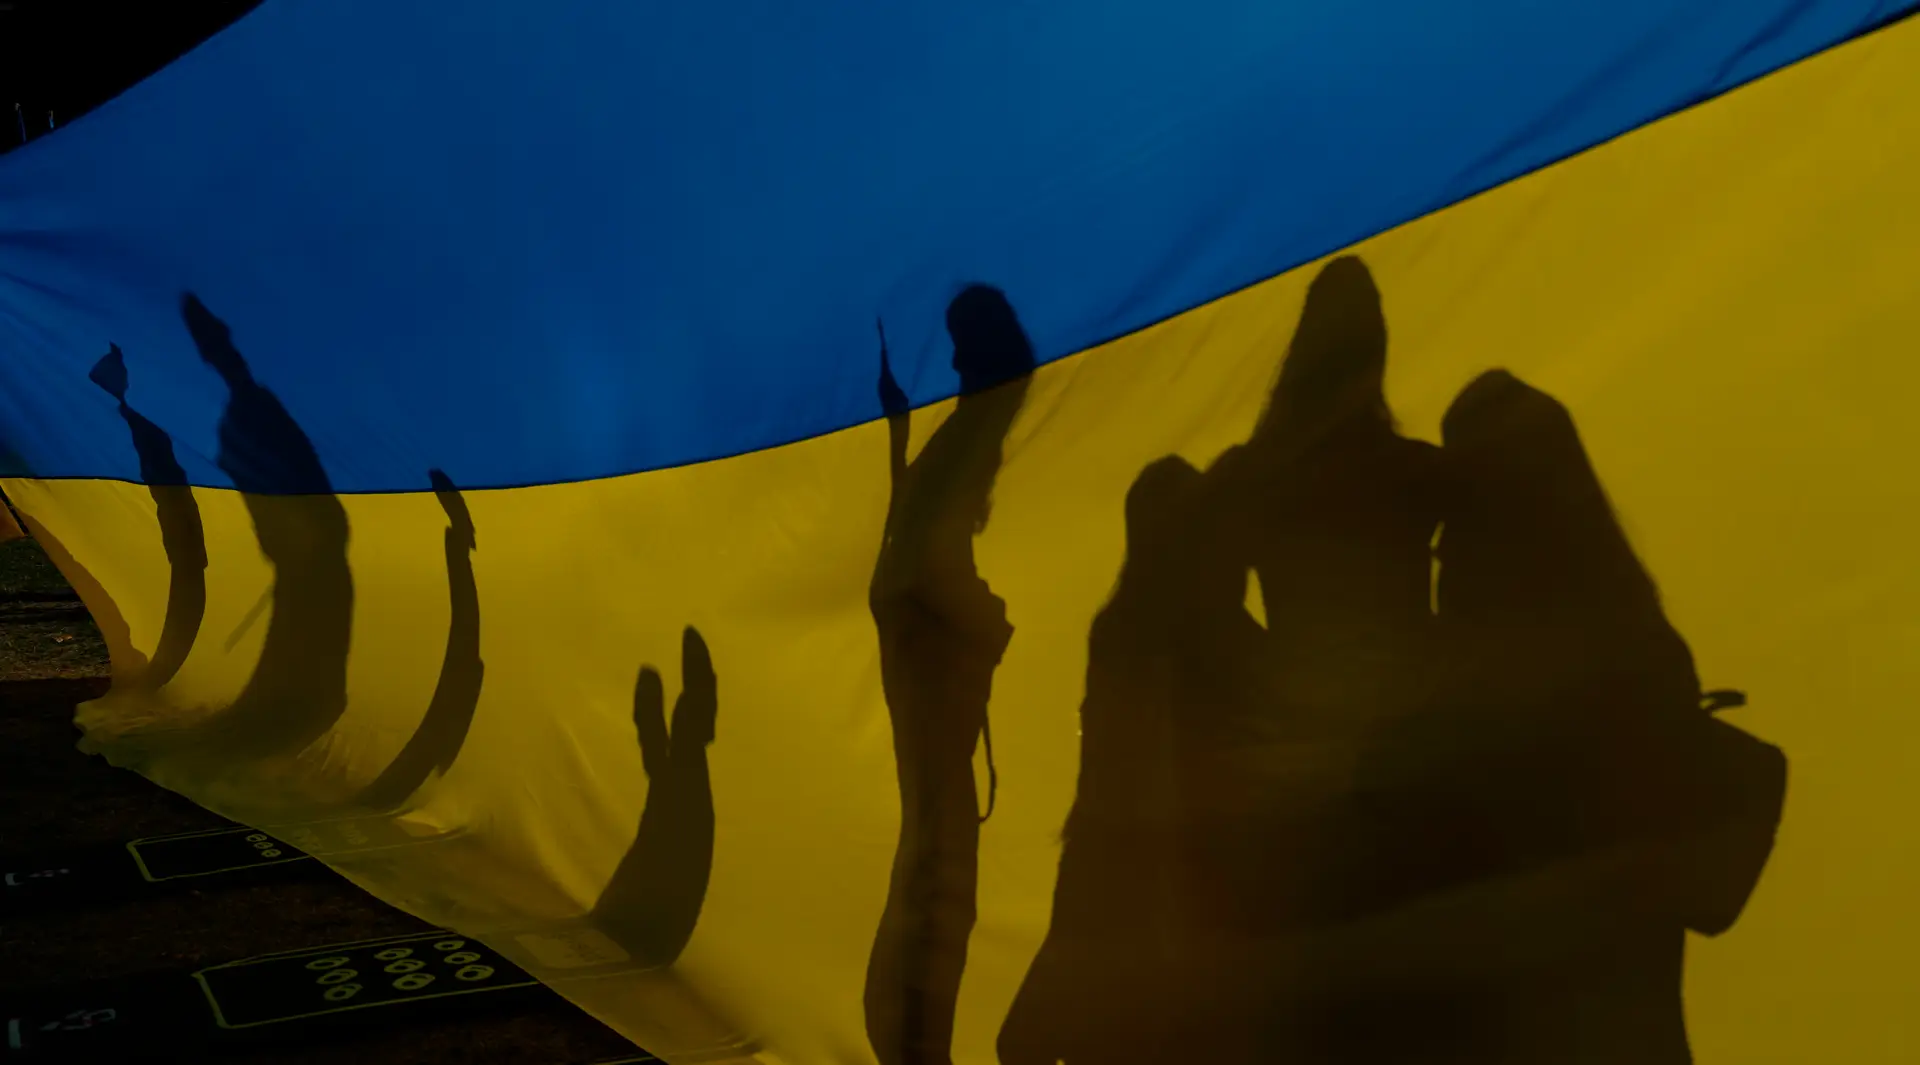 Prémio Sakharov entregue ao "bravo povo ucraniano"